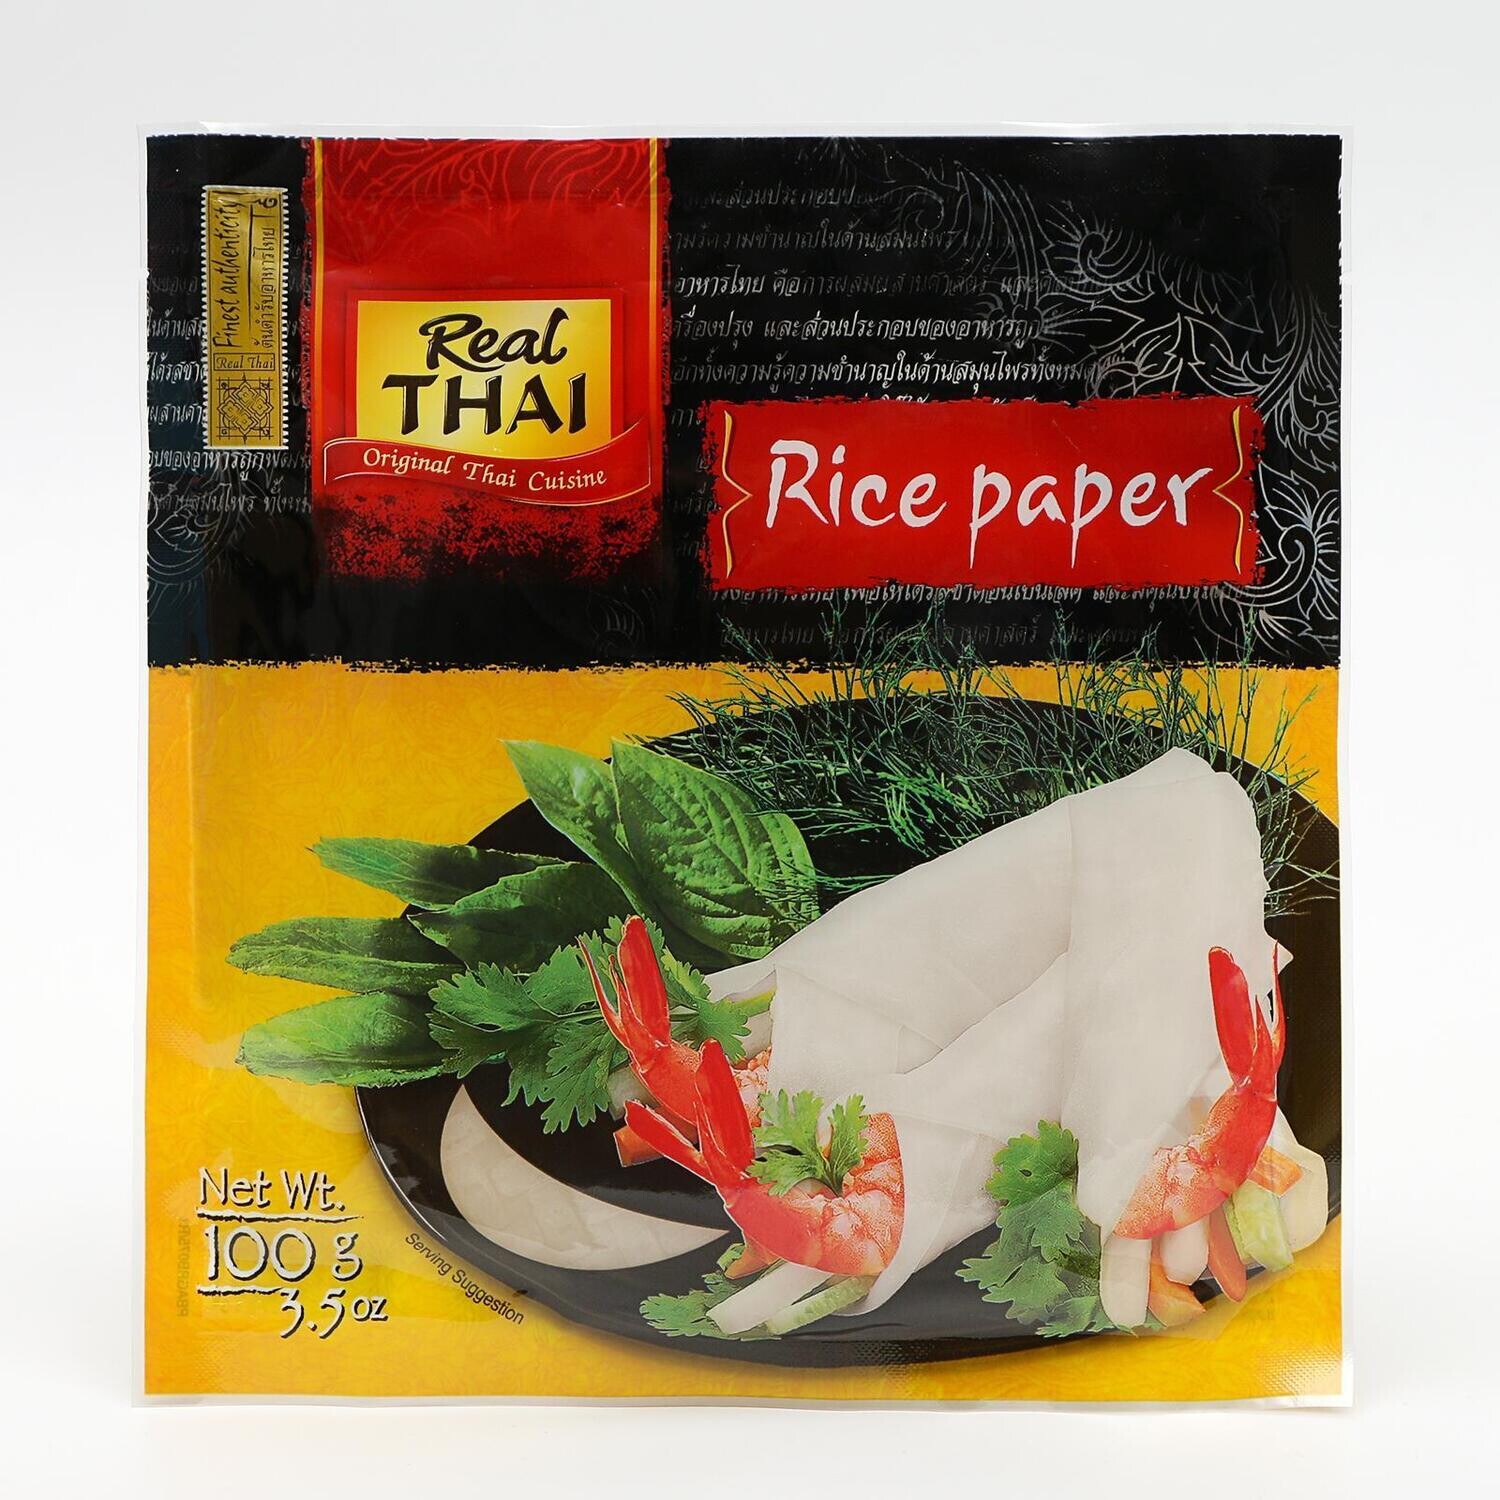 Рисовая бумага круглая d16см, 12шт, 100 г. (Таиланд) "Real Thai"